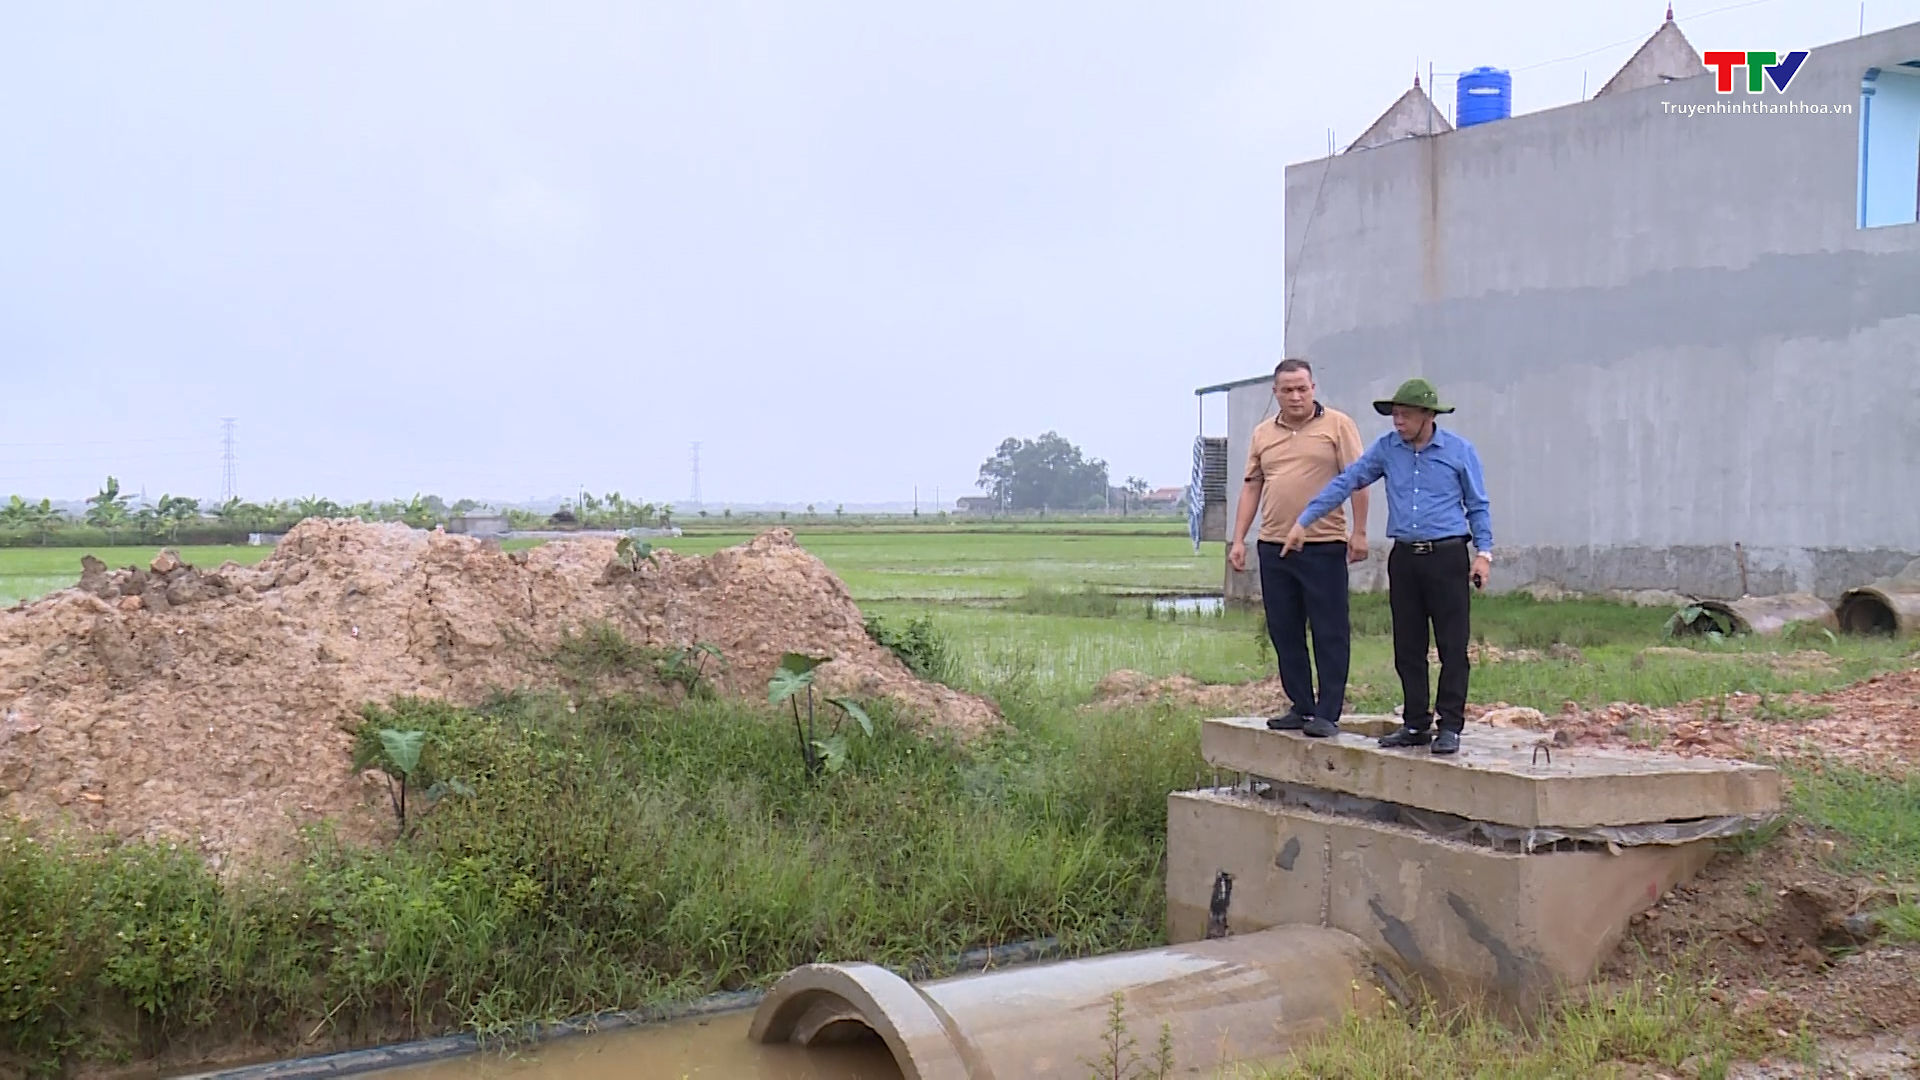 Huyện Đông Sơn: Thi công đường ảnh hưởng đến hệ thống cấp nước - Ảnh 3.